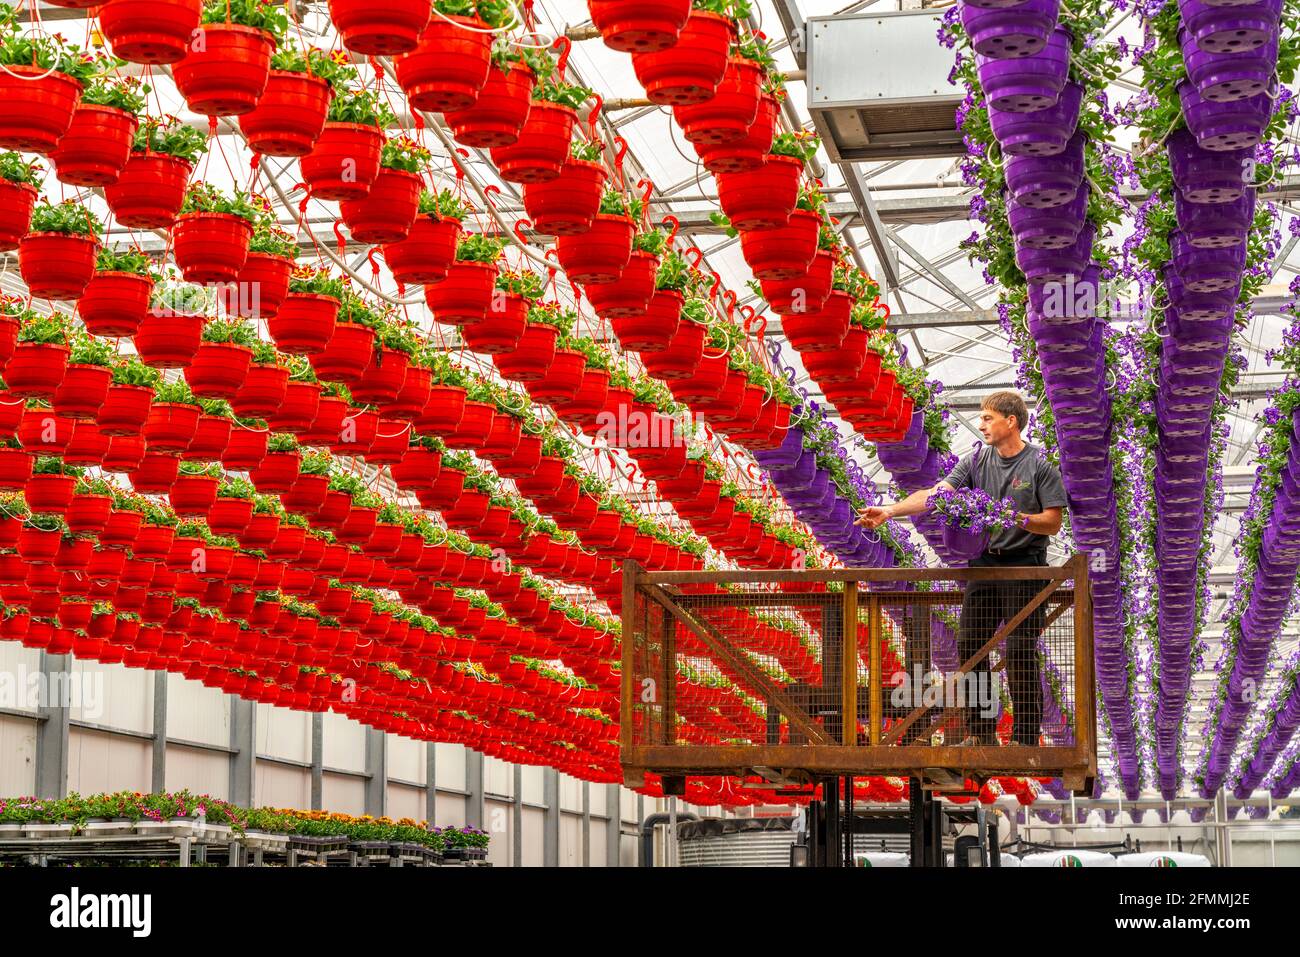 Gartenbau Betrieb, rund 3000 Töpfe, s.g. Petunien-Ampeln, wachsen in einem Gewächshaus, bis sie das richtige Wachstums Stadium für den Einzelhandel ha Stock Photo